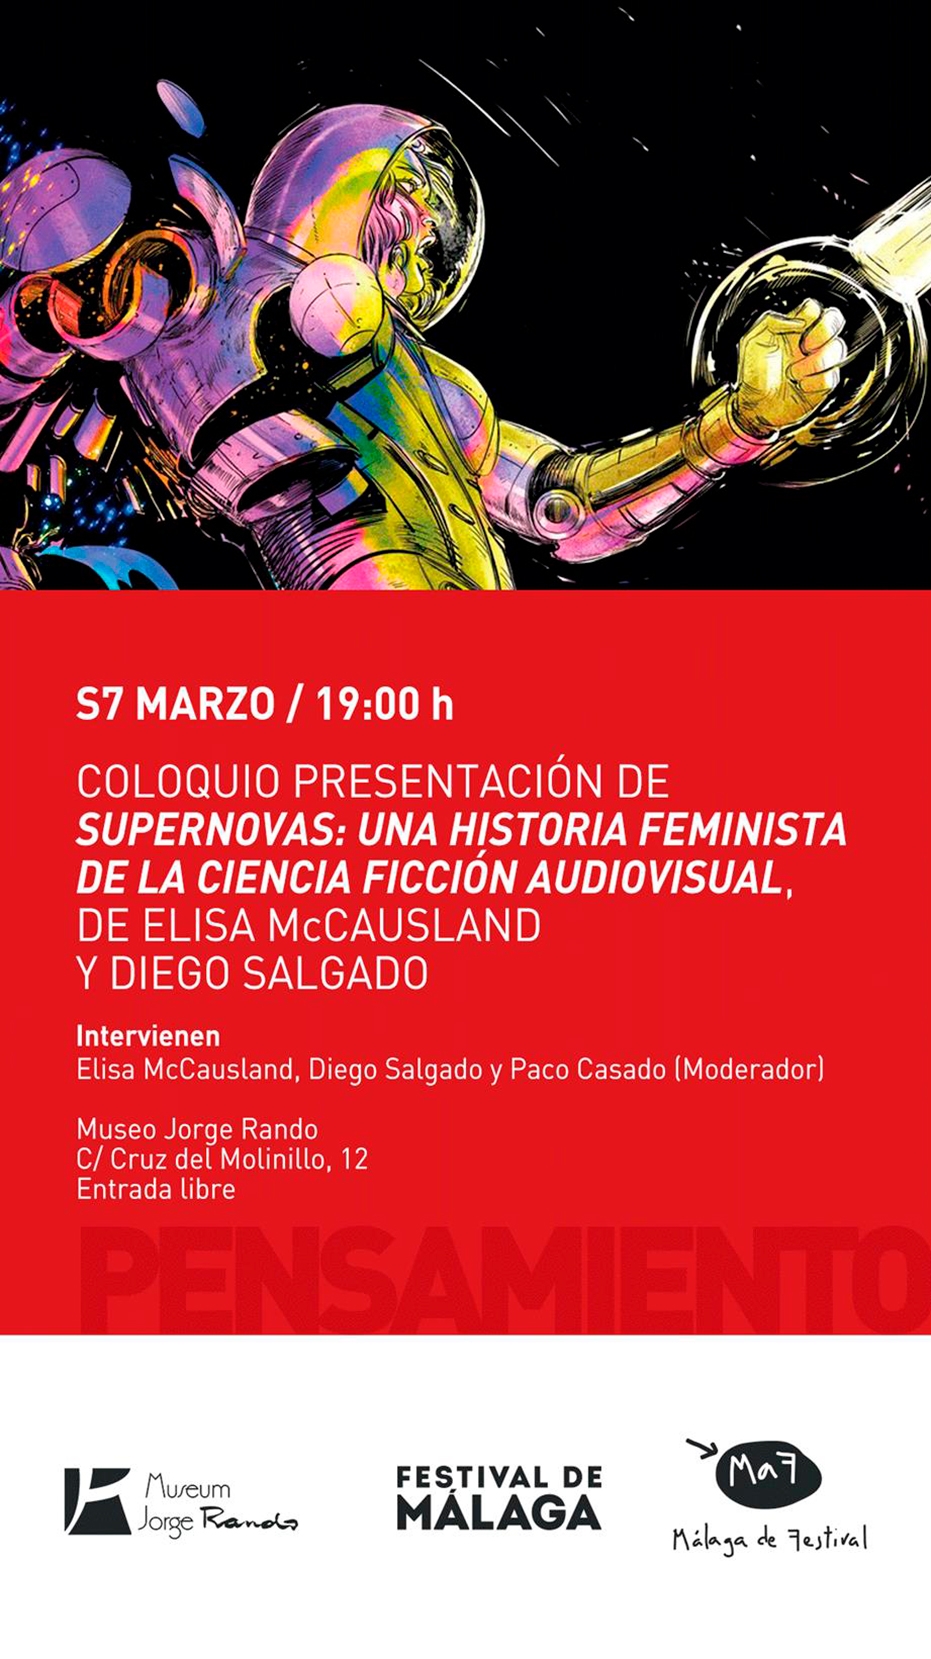 Coloquio presentación de Supernovas: una historia feminista de la ciencia ficción audiovisual, de Elisa McCausland y Diego Salgado